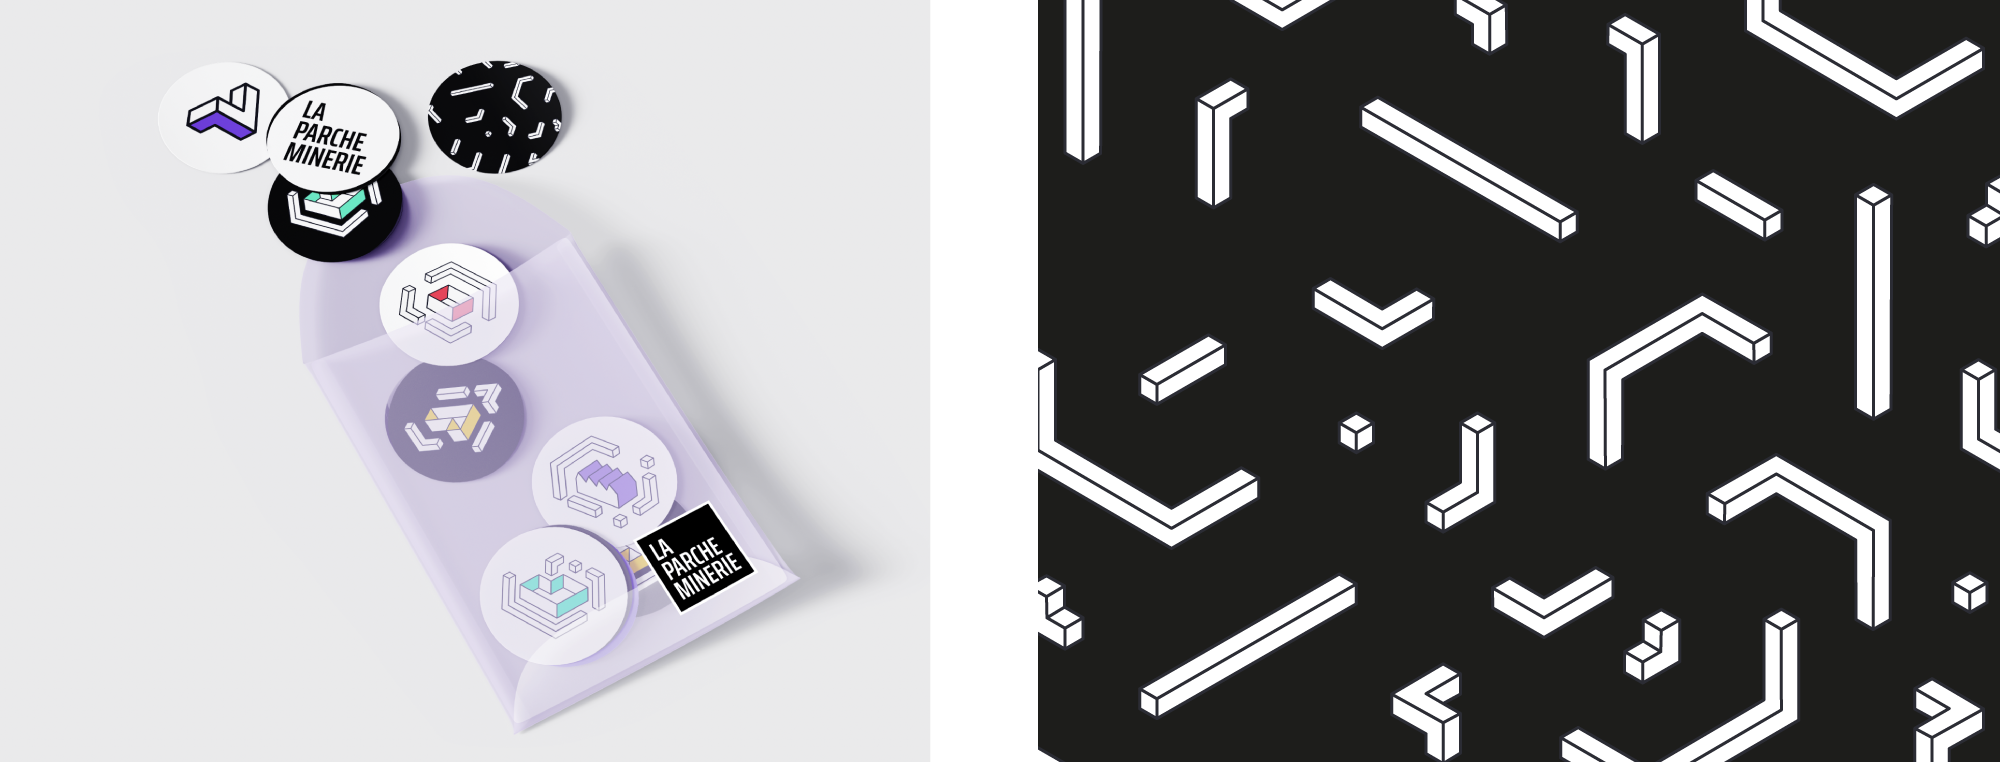 Mock-up de stickers pour La Parcheminerie à coté d'une image avec des motifs blancs sur fond noir.